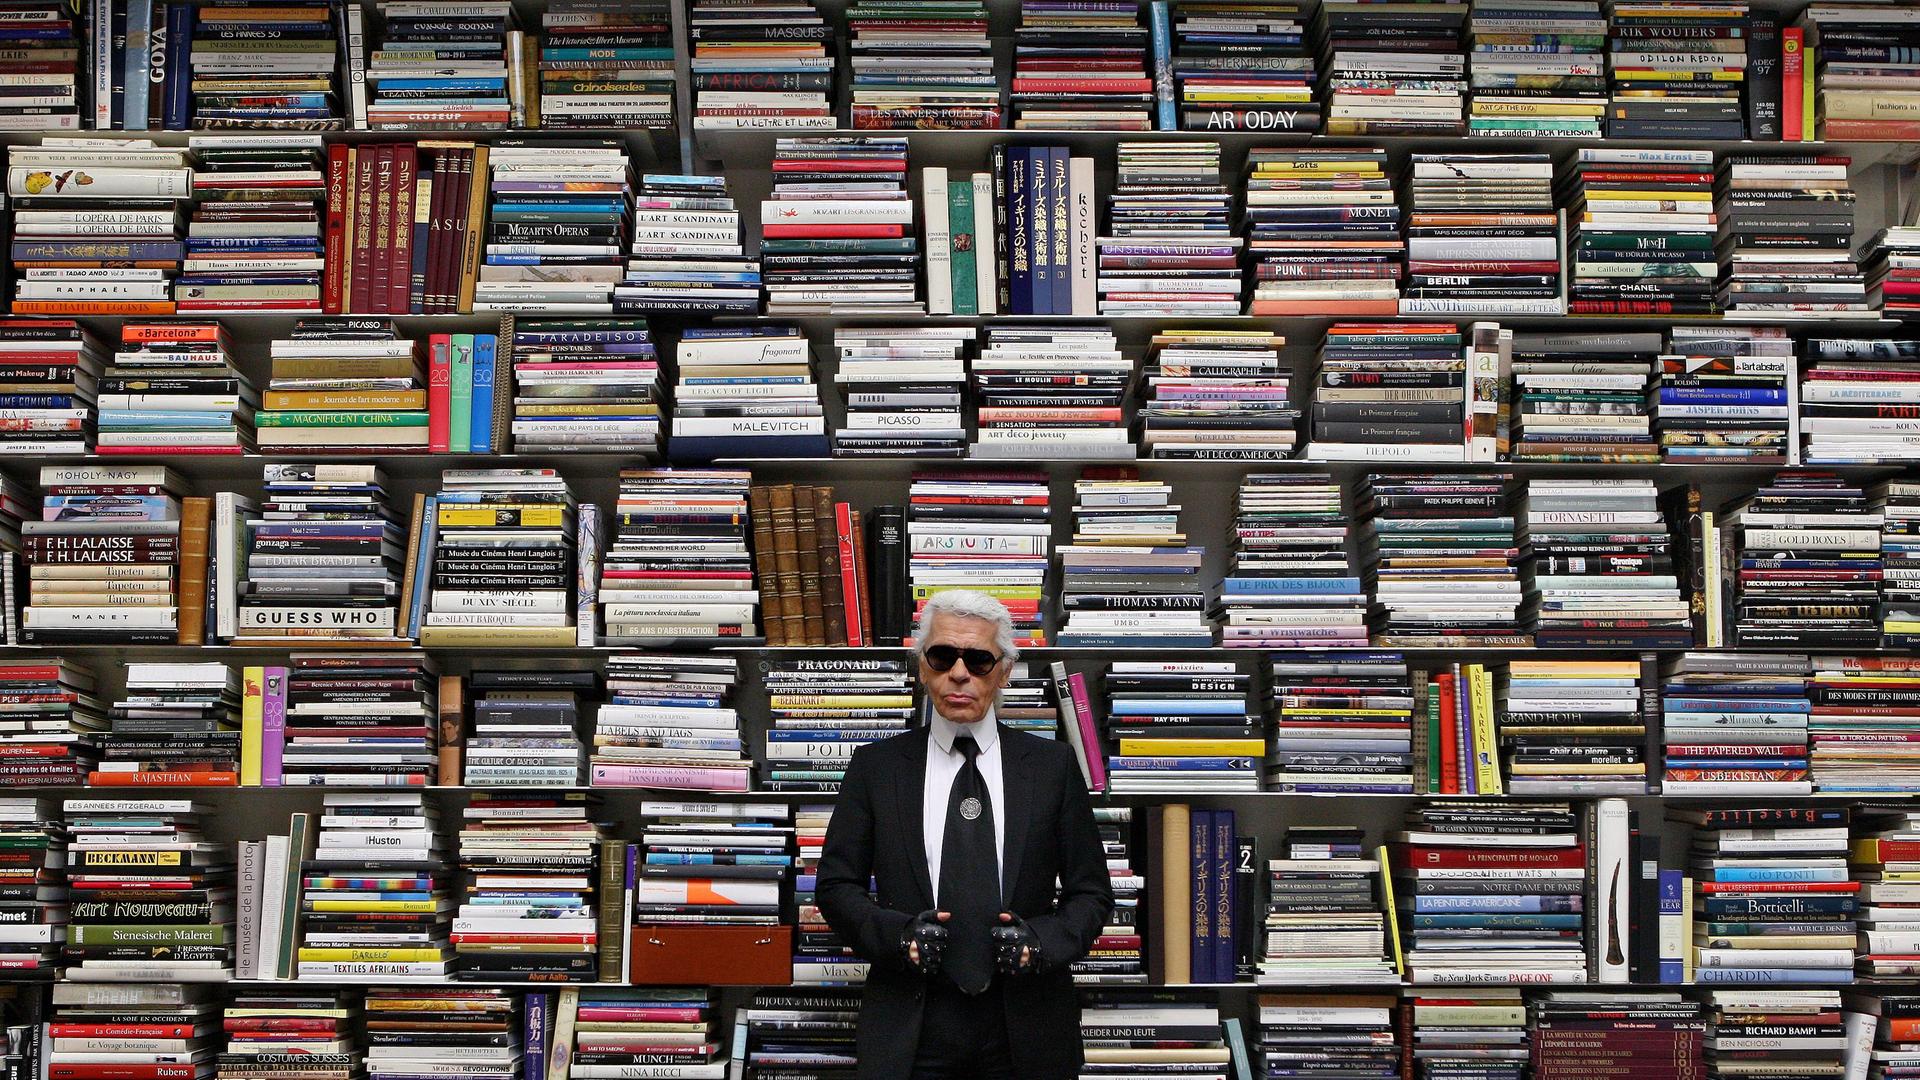 Ein Mann in schwarzer Kleidung und mit Sonnenbrille steht vor einem riesigen Regal mit hunderten von großformatigen Büchern.